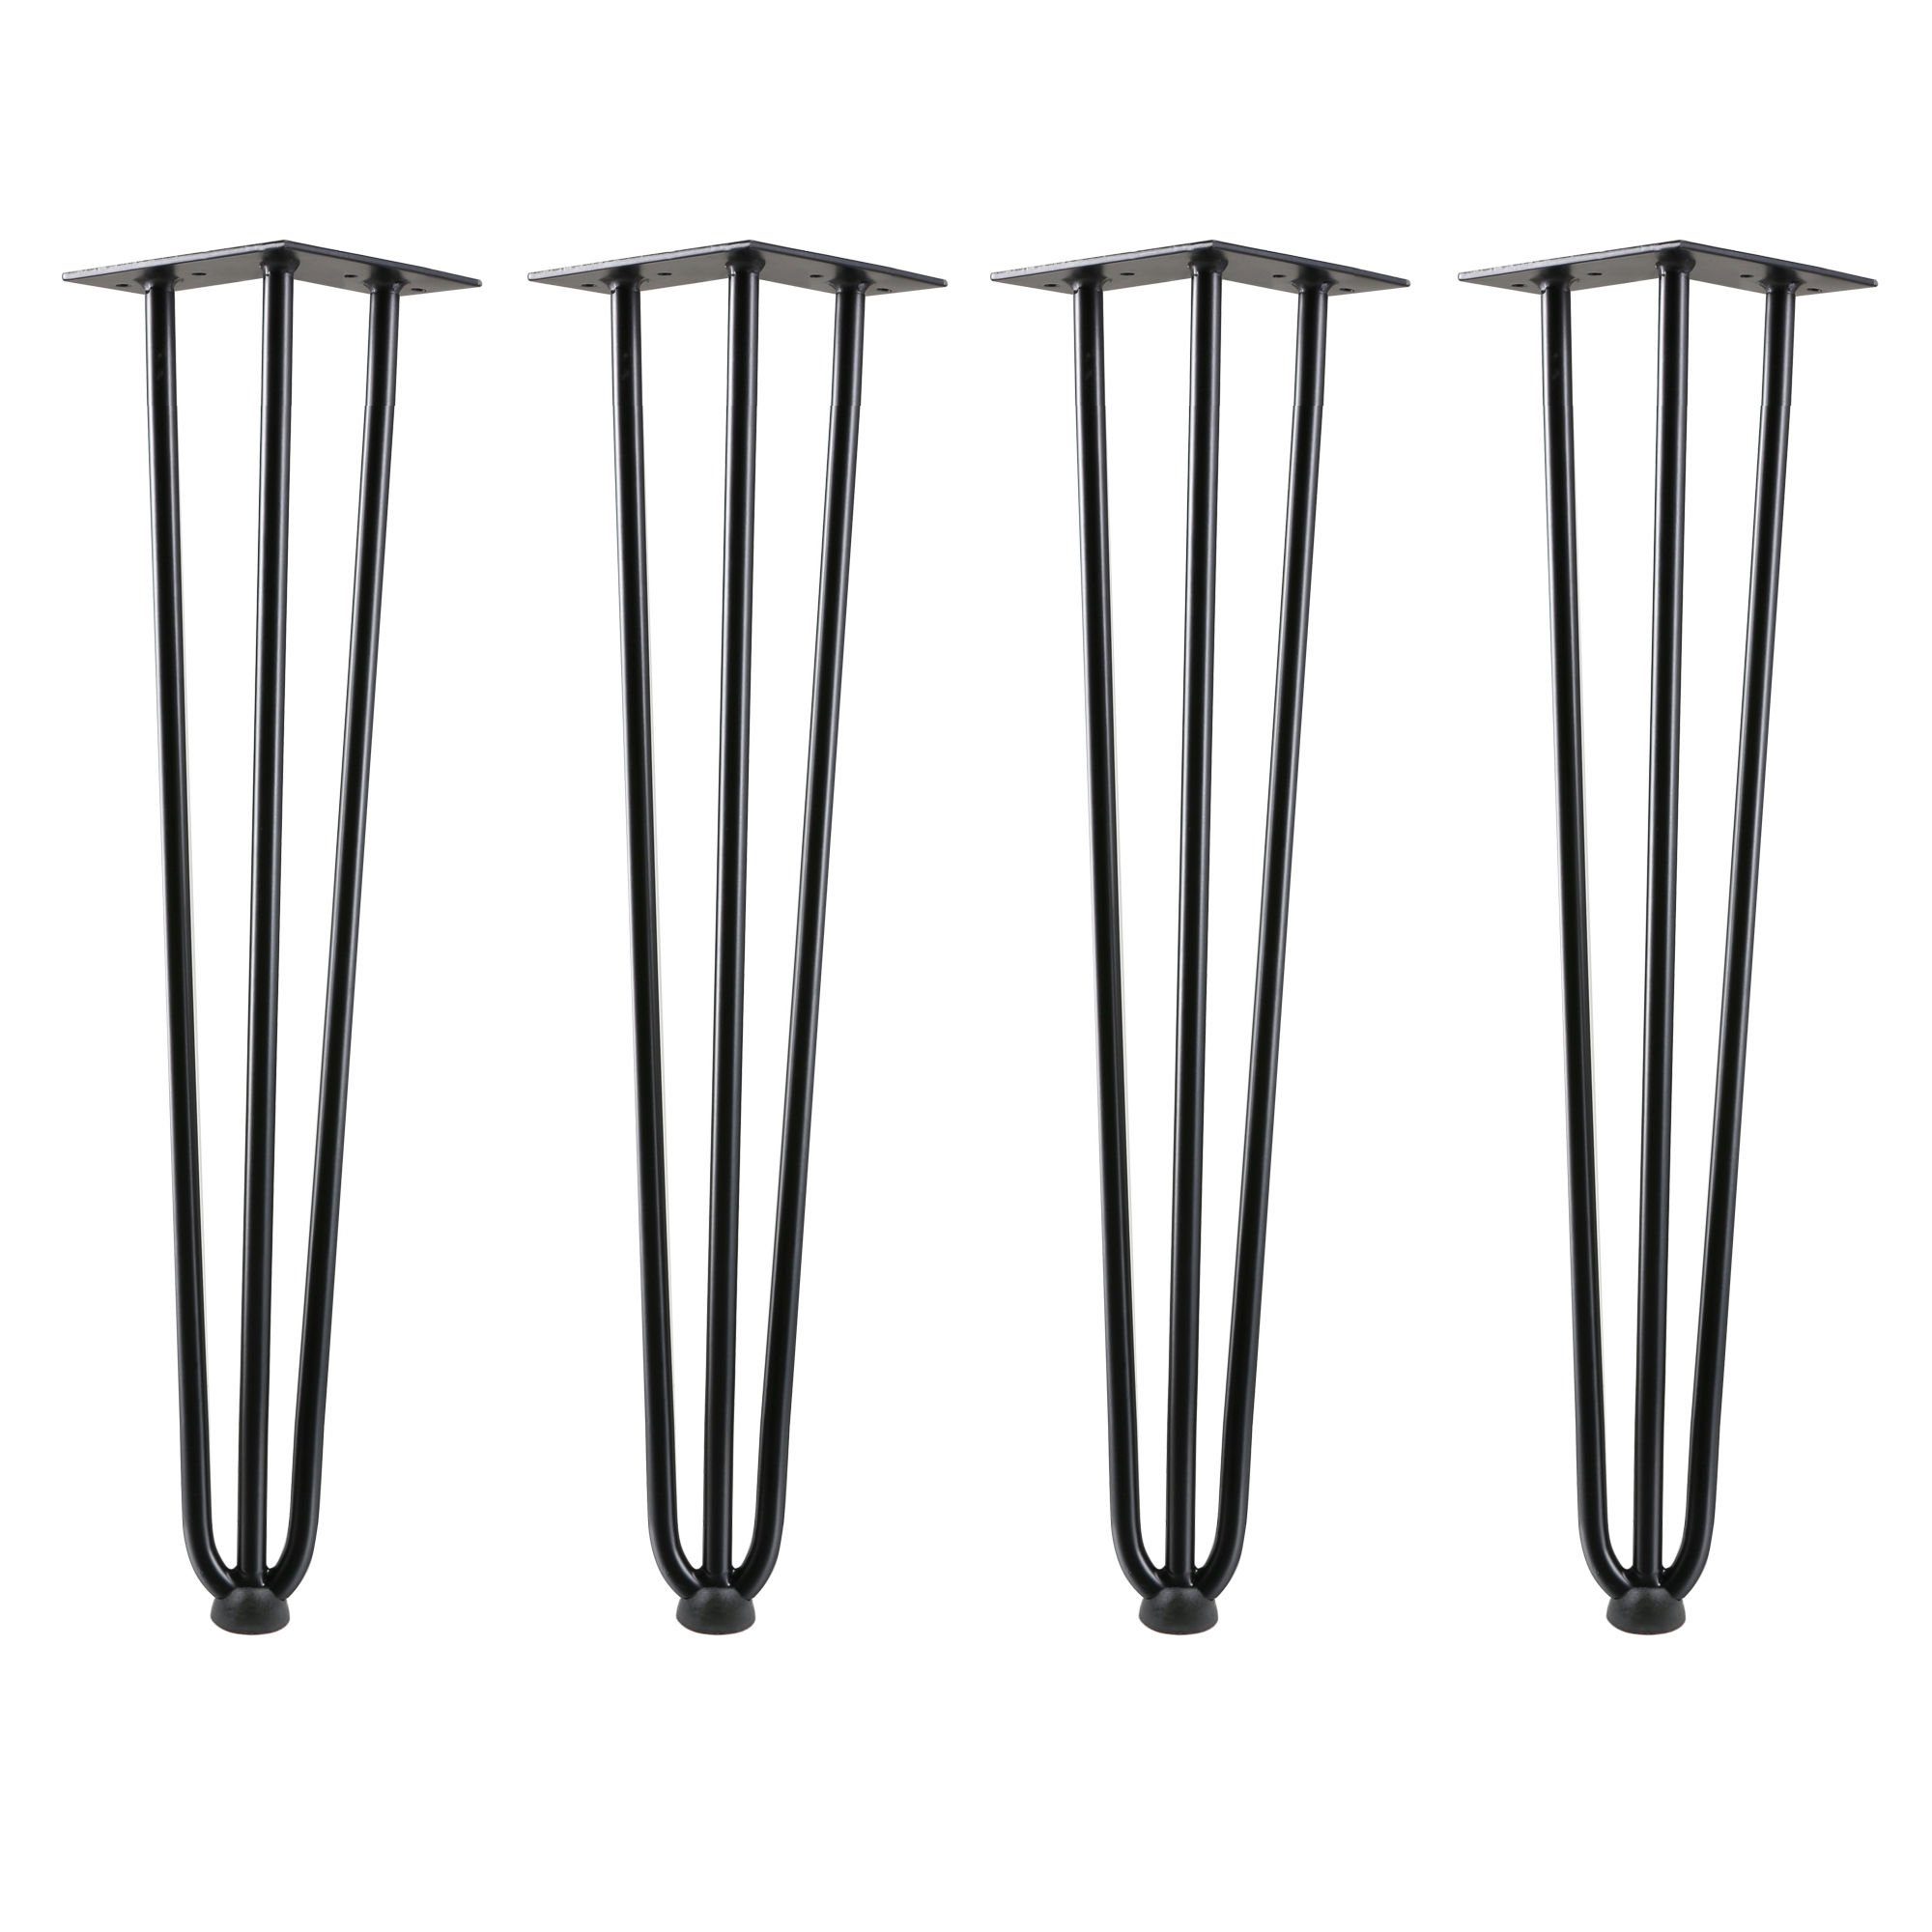 Zelsius Tischbein Hairpin Legs, 4er Stahl, Set, Tischbeine 60 3 Streben schwarz, aus cm